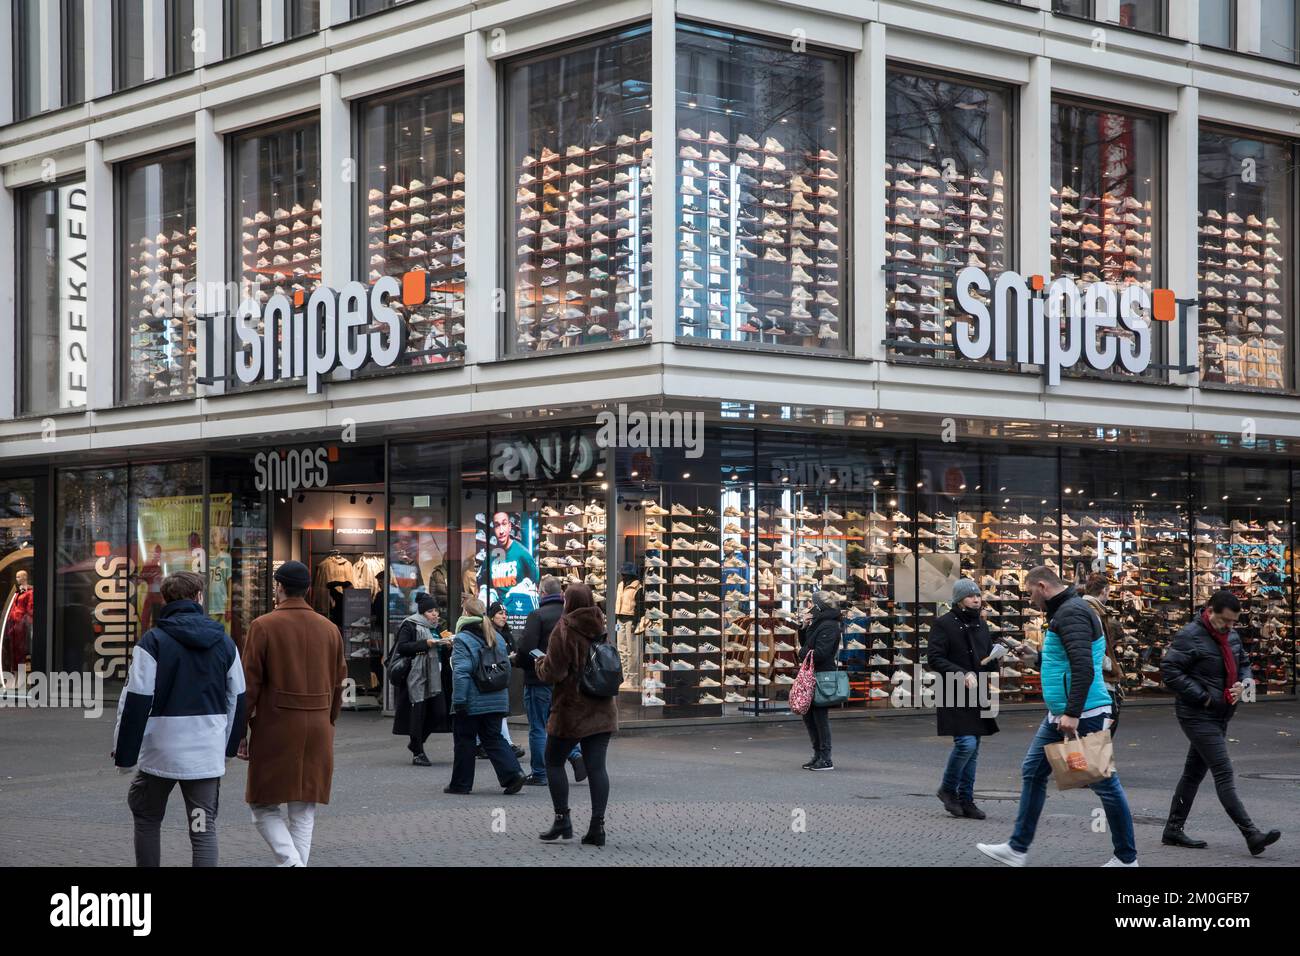 Magasin Snipes sur la rue commerçante Schildergasse, magasin de baskets et de streetwear, Cologne, Allemagne. Snipes Store dans der Fussgaengerzone Schildergass Banque D'Images